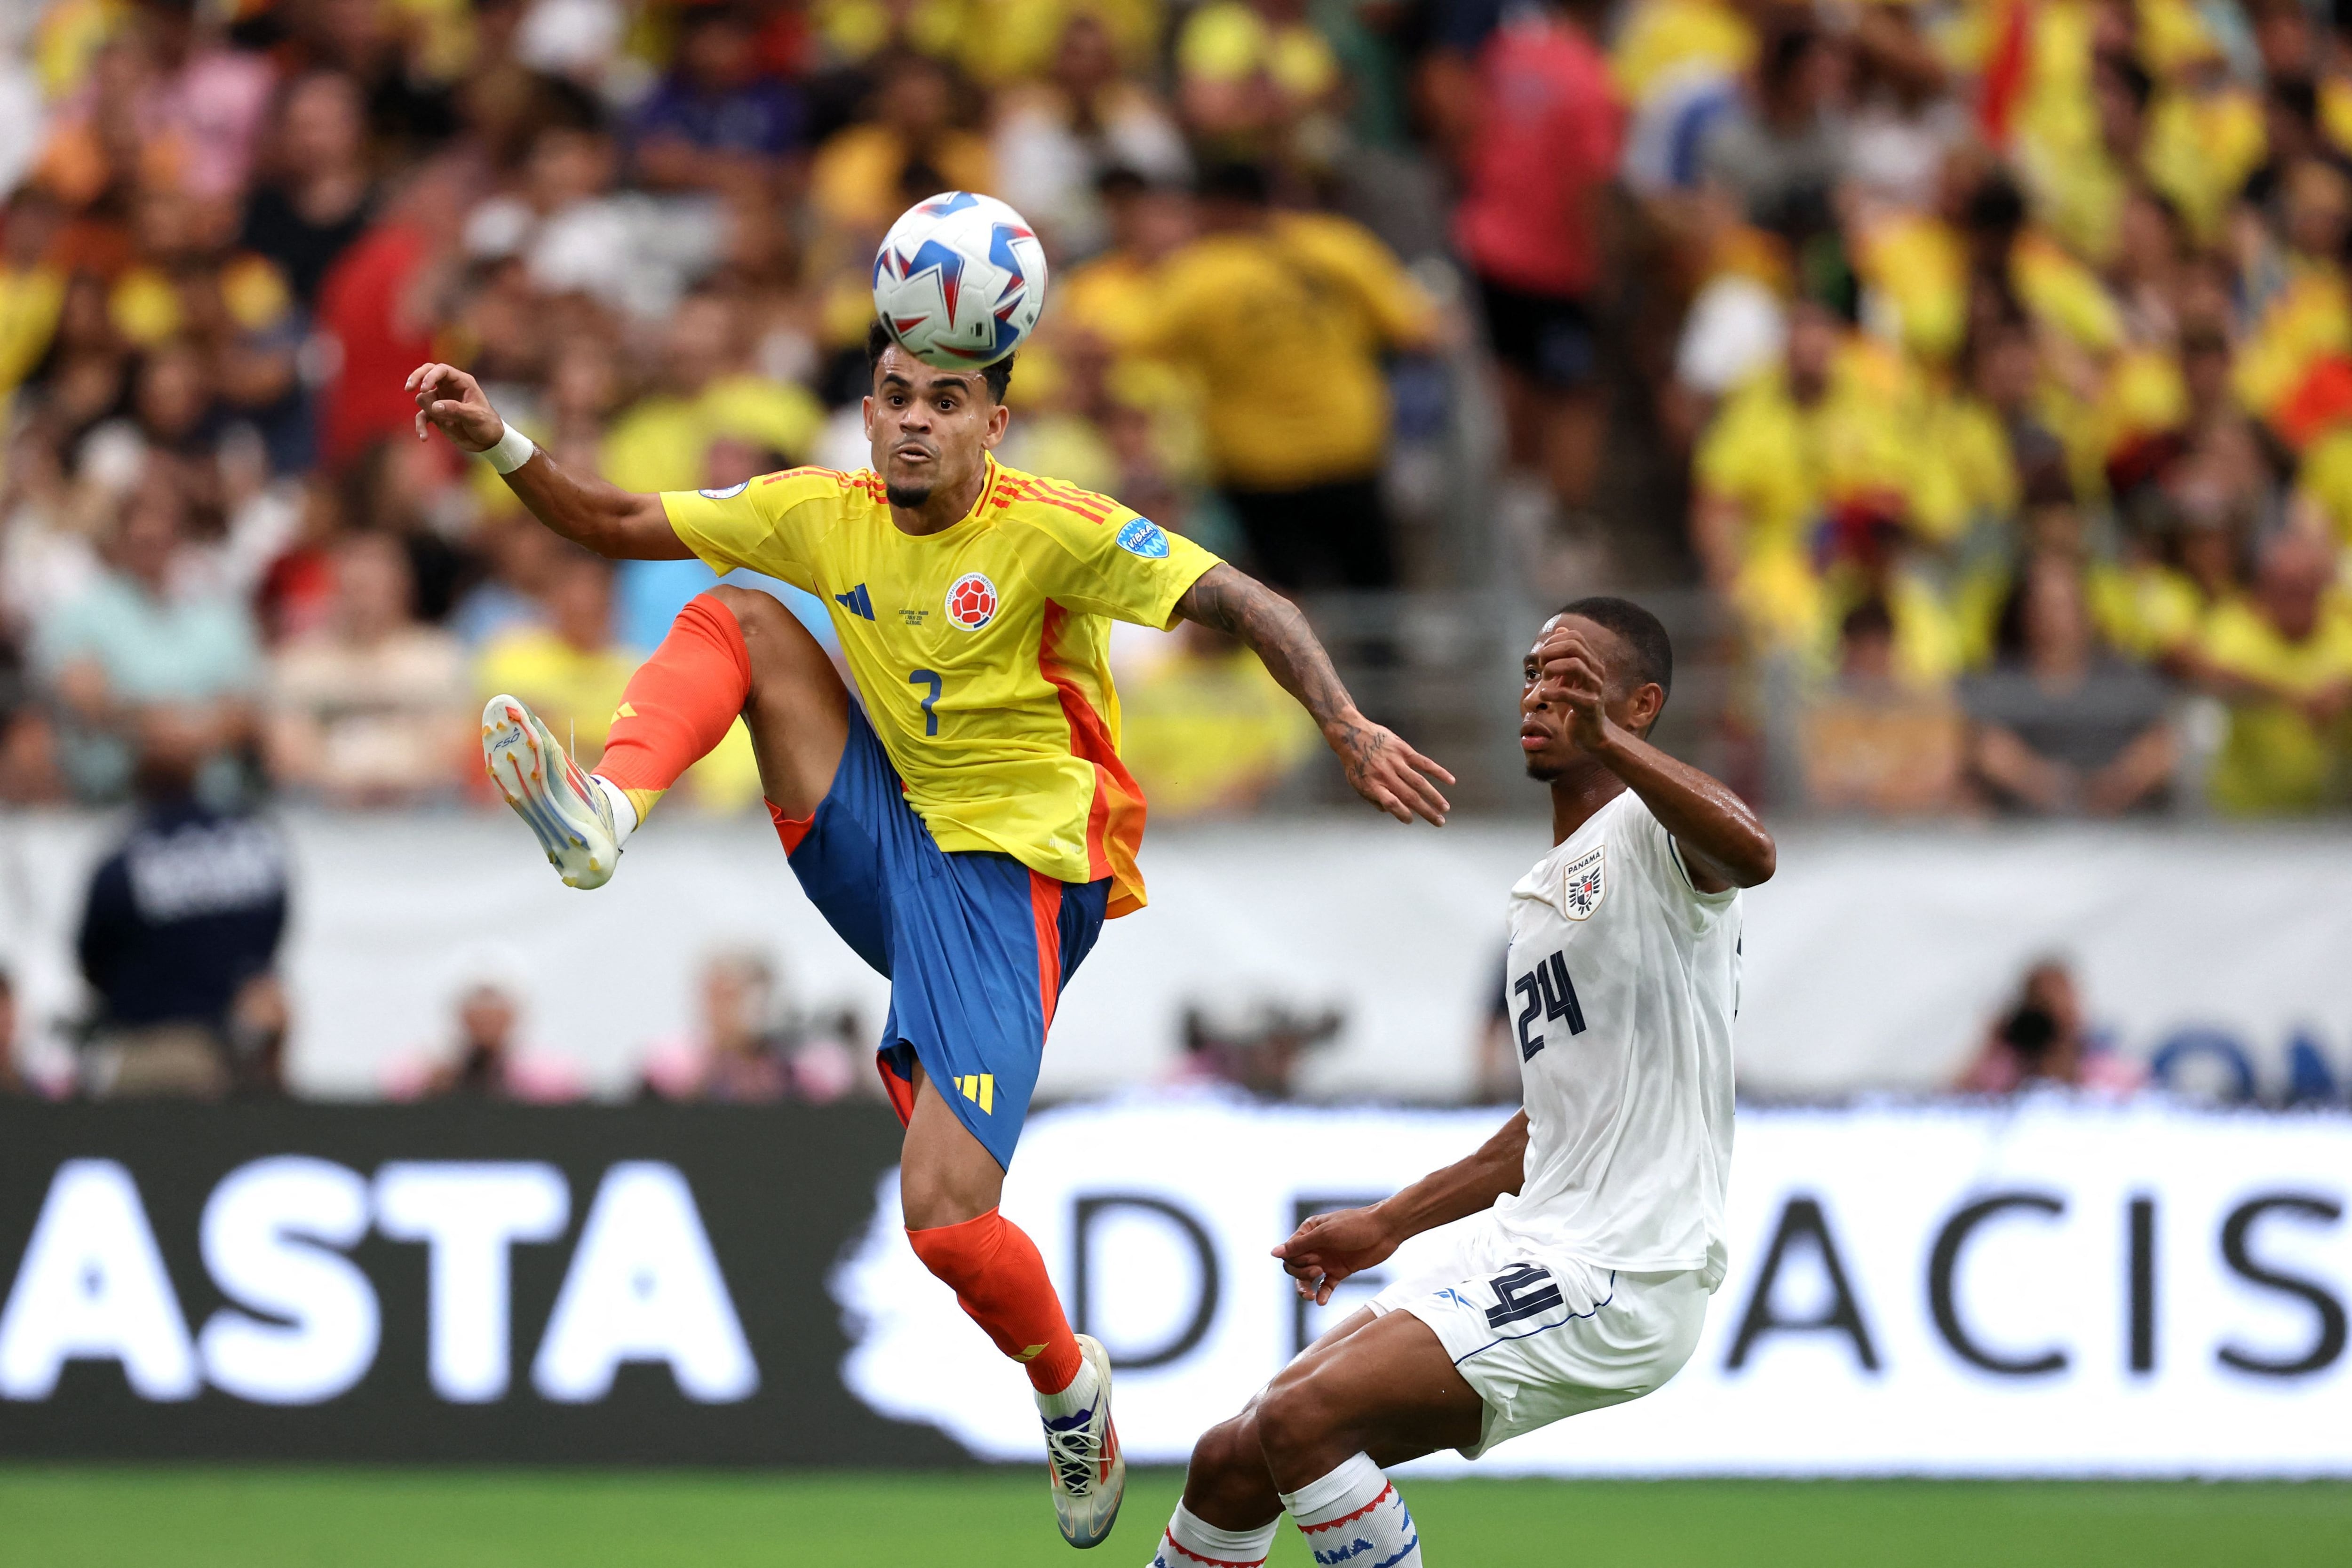 Luis Díaz, quien es marcado por el panameño Edgardo Fariña, marcó el tercer tanto ante Panamá, en la goleada de 5-0 que le propinó Colombia en los cuartos de final de la Copa América.